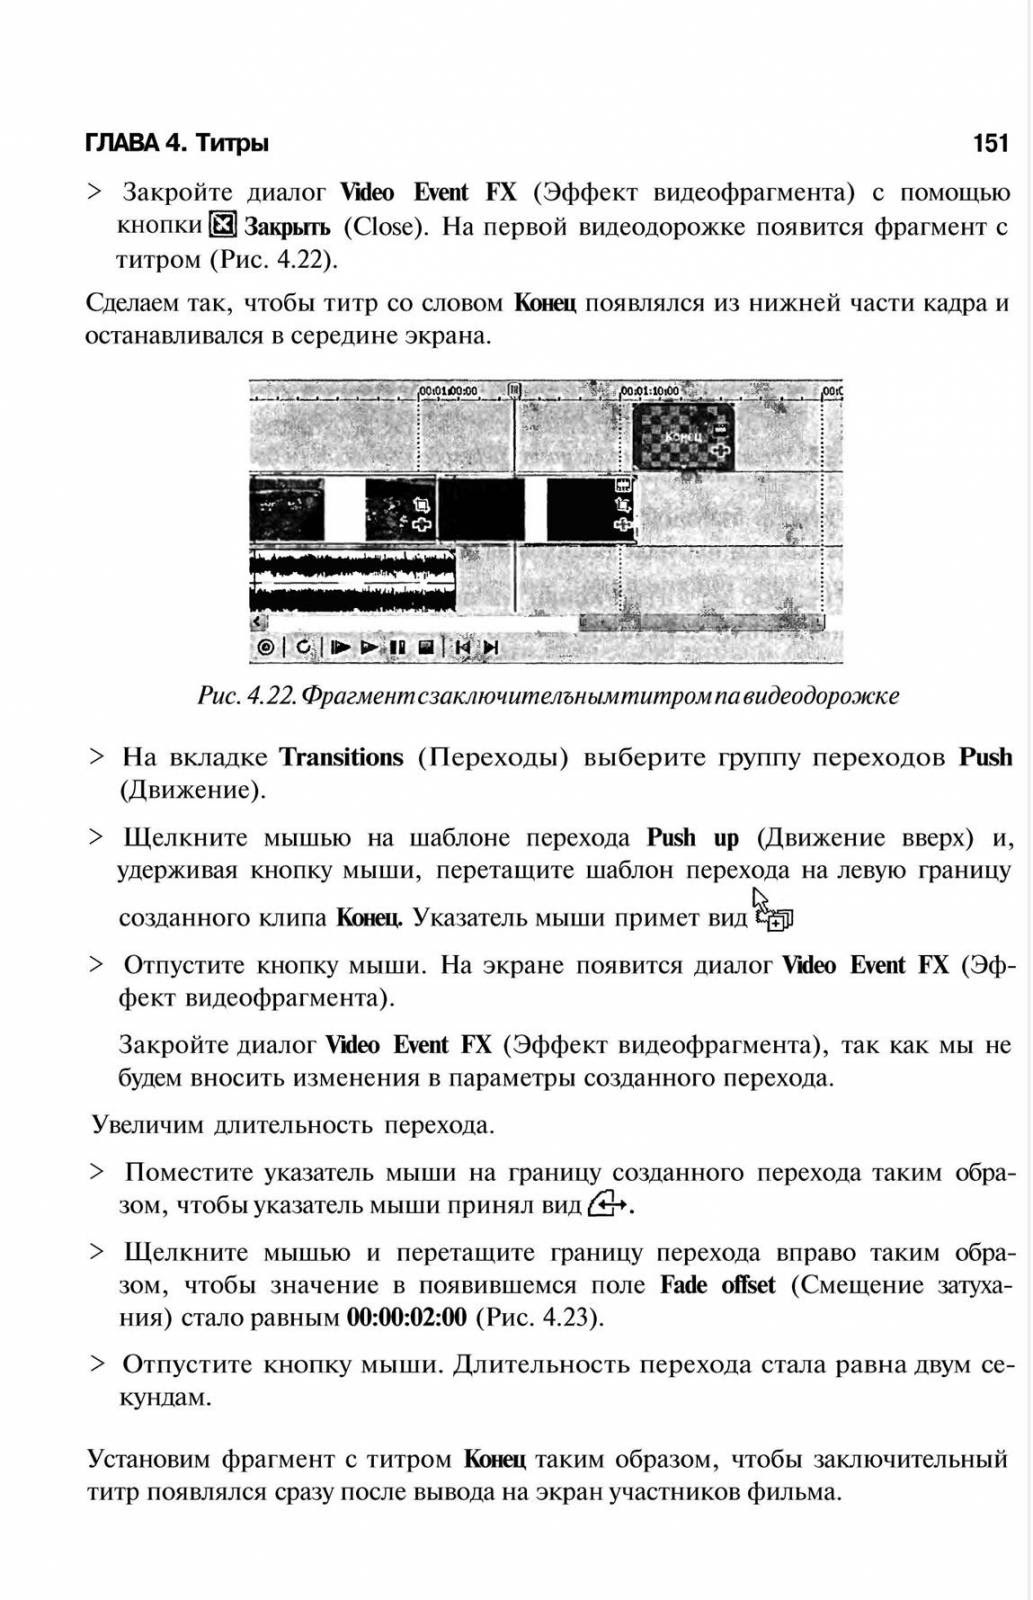 http://redaktori-uroki.3dn.ru/_ph/6/189858760.jpg